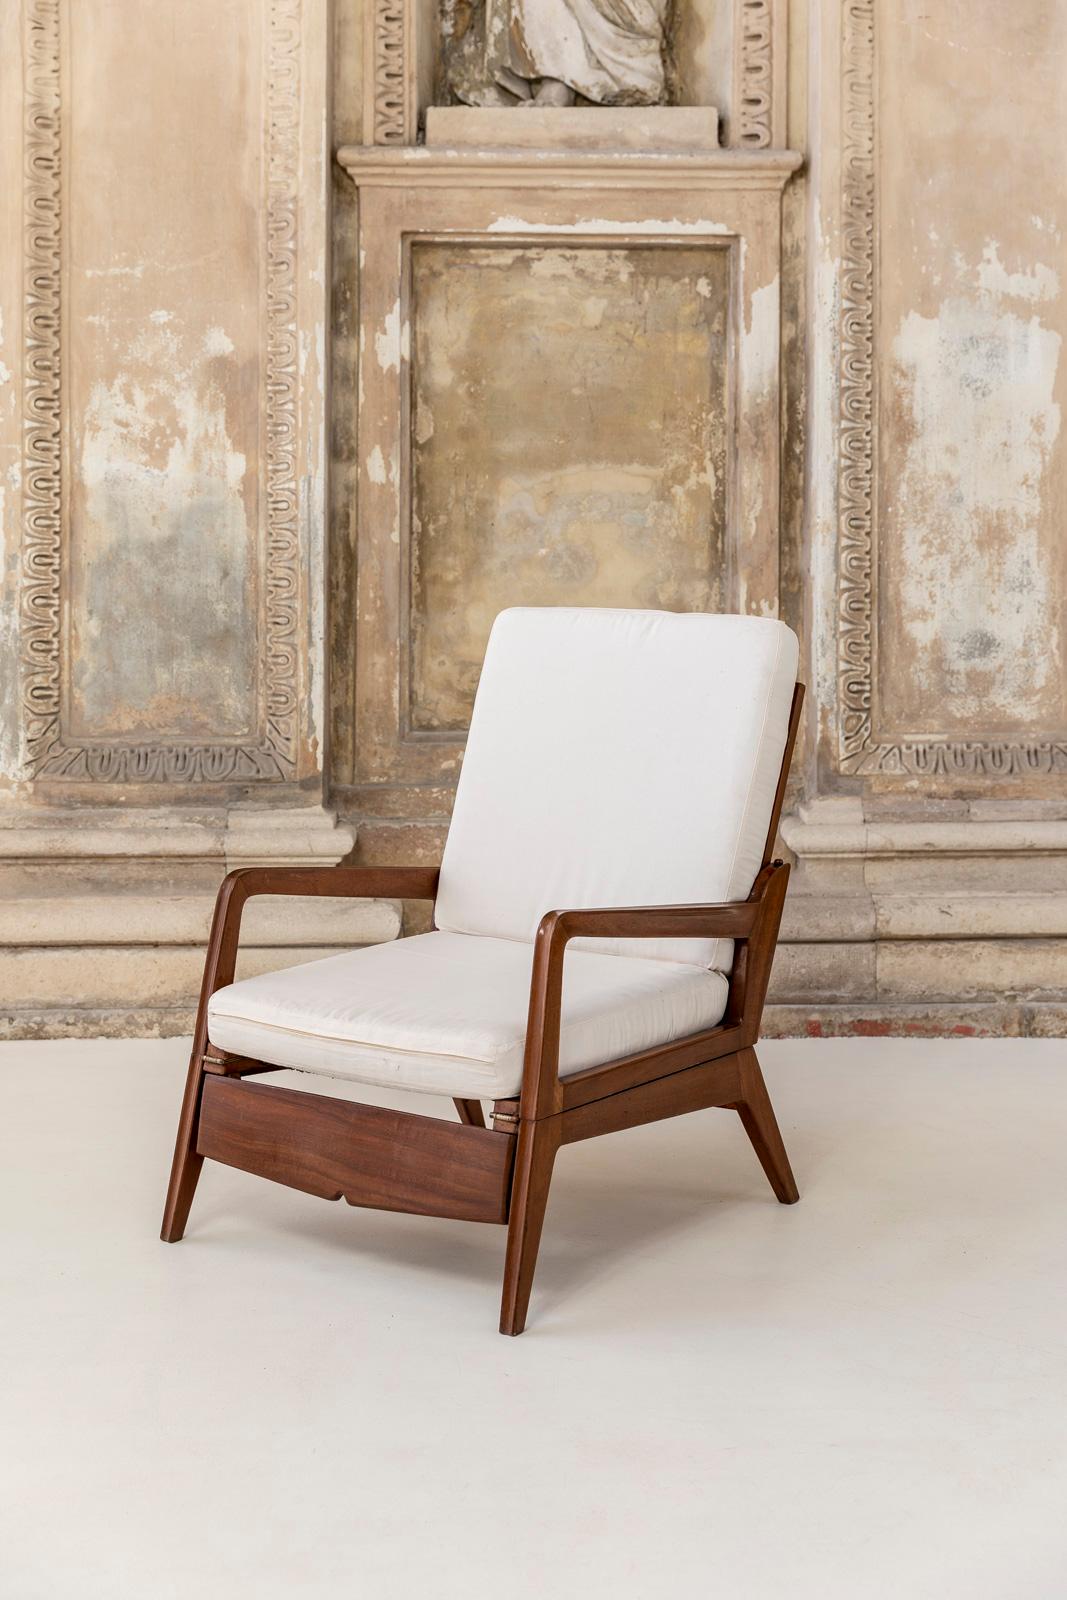 Ce fauteuil peut être facilement transformé en triclinium. Accessoirisé avec un coussin de siège blanc.
Structure solide en bois et conditions parfaites. 

Dimensions en position ouverte : 120 cm (L) x 78 cm (P) x 42 (H avec coussin).